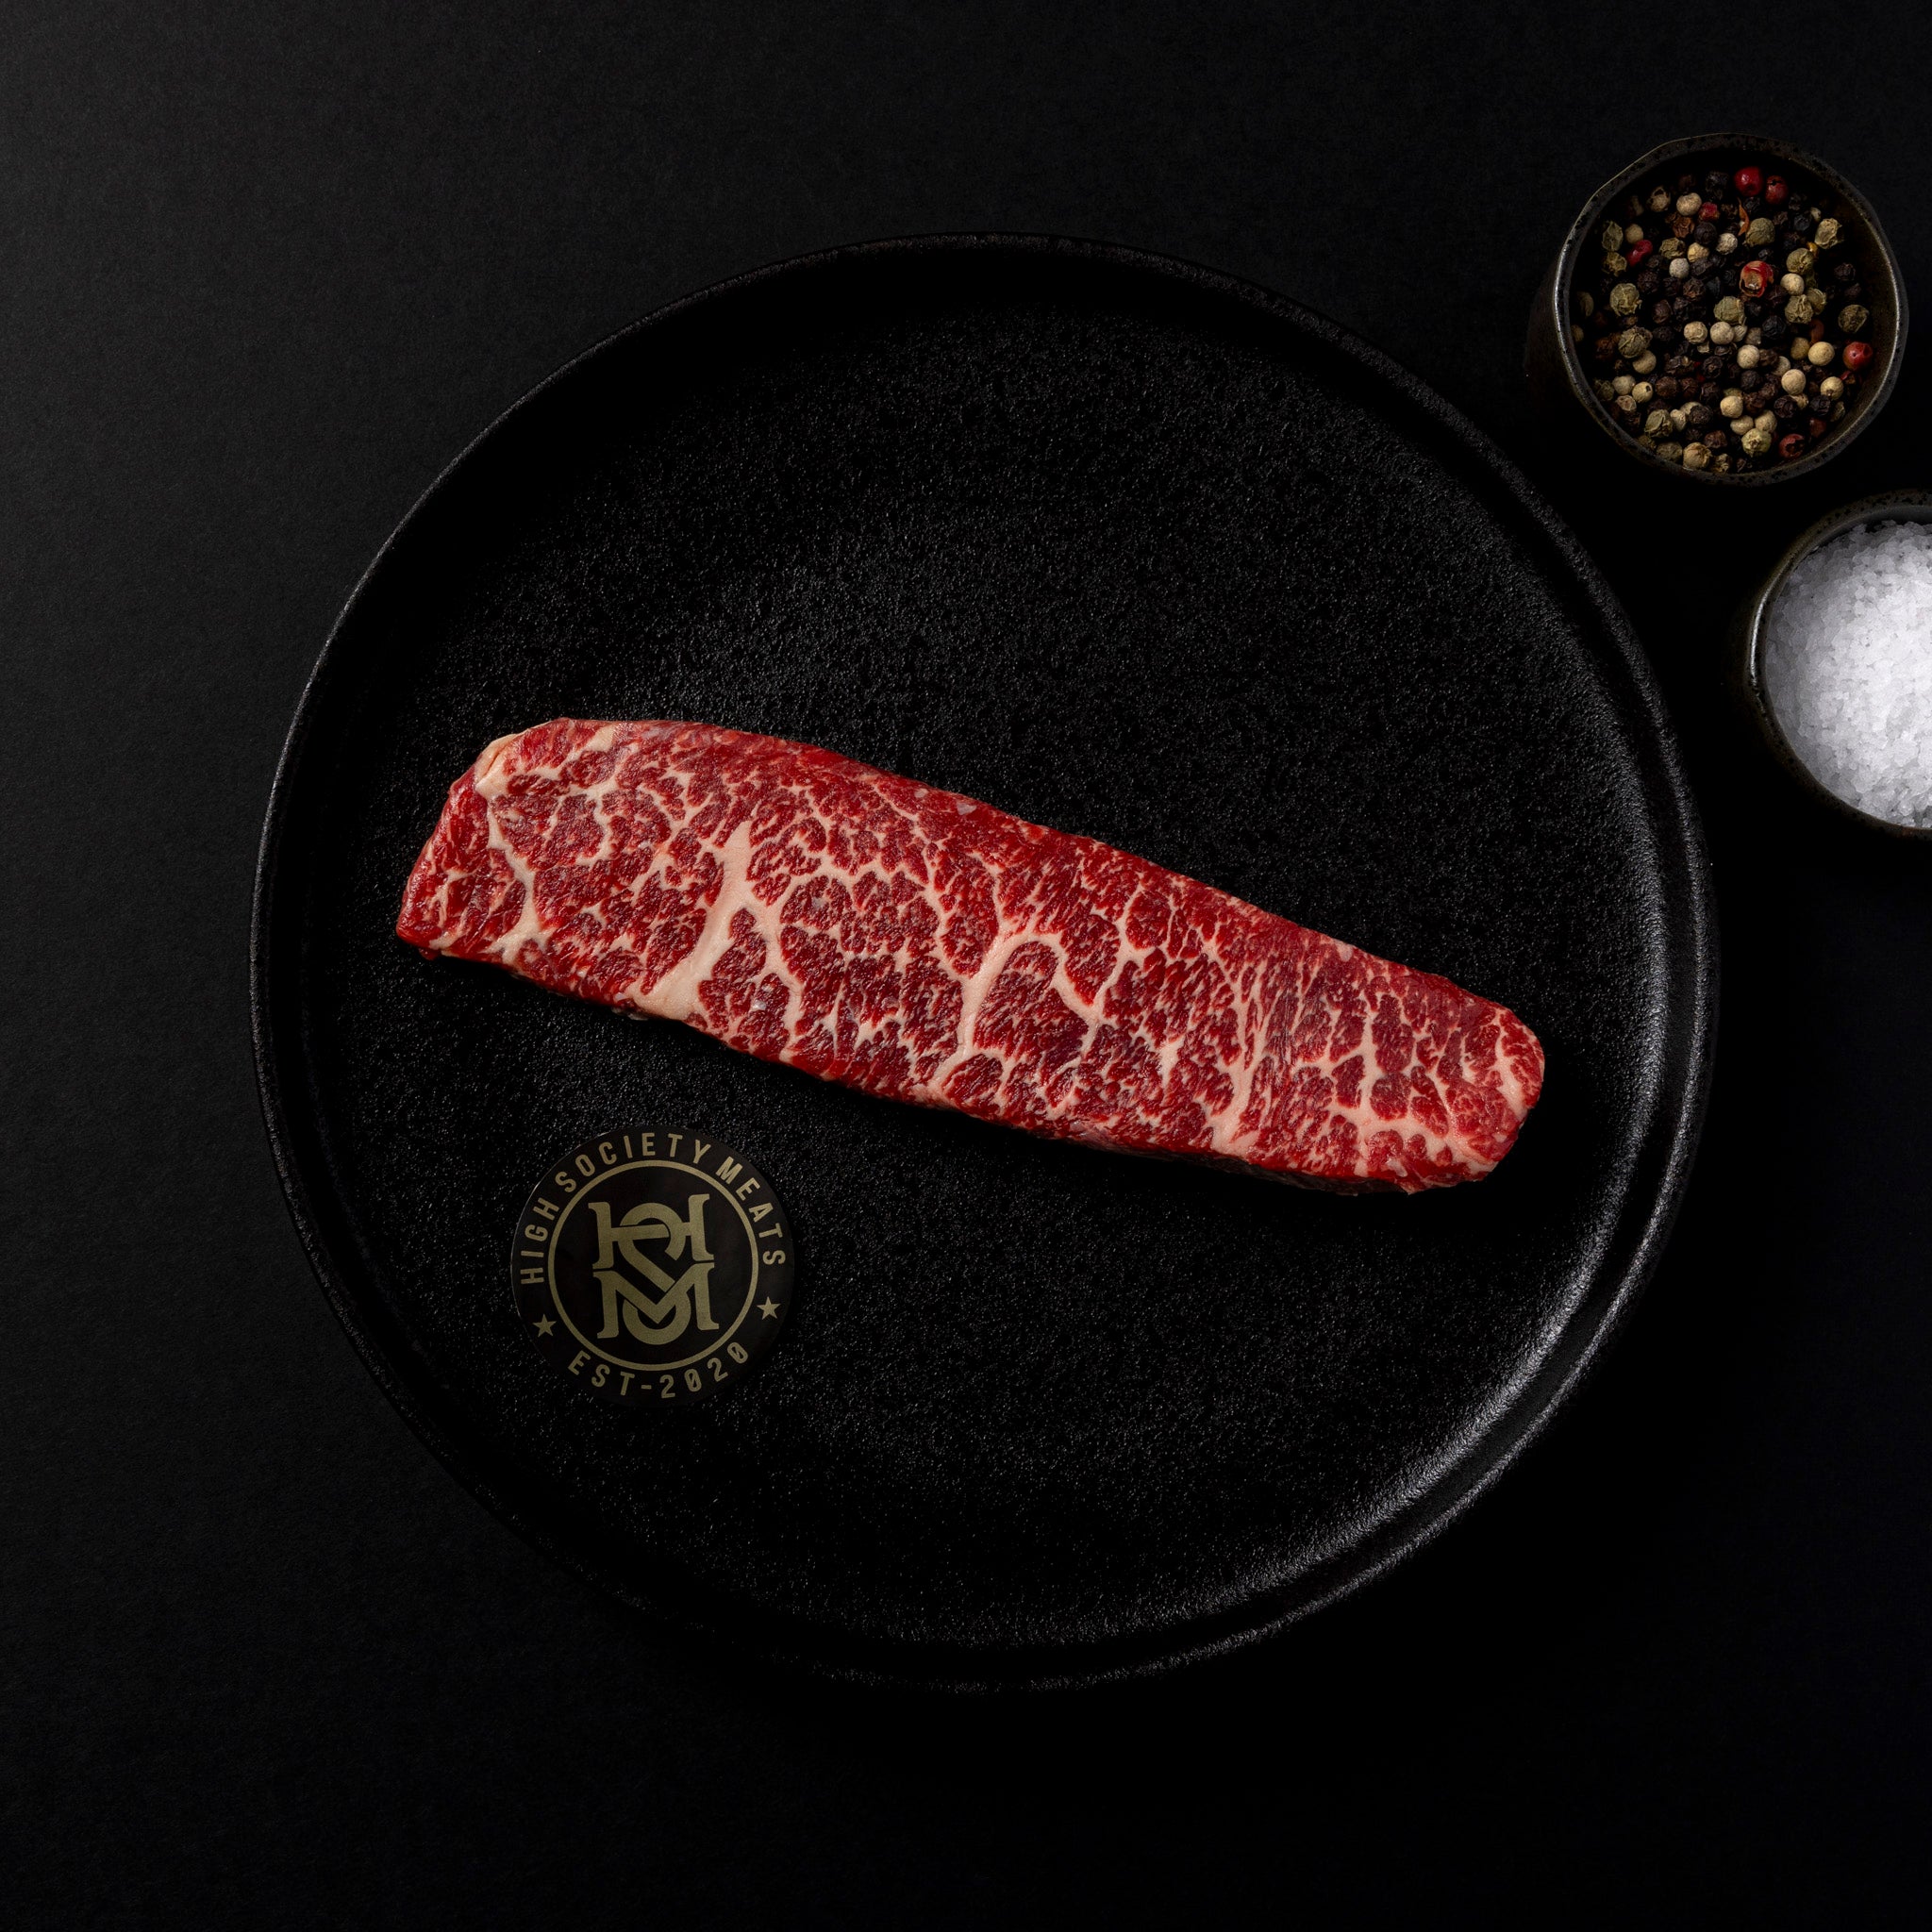 USDA Prime Denver Steak | 8 oz